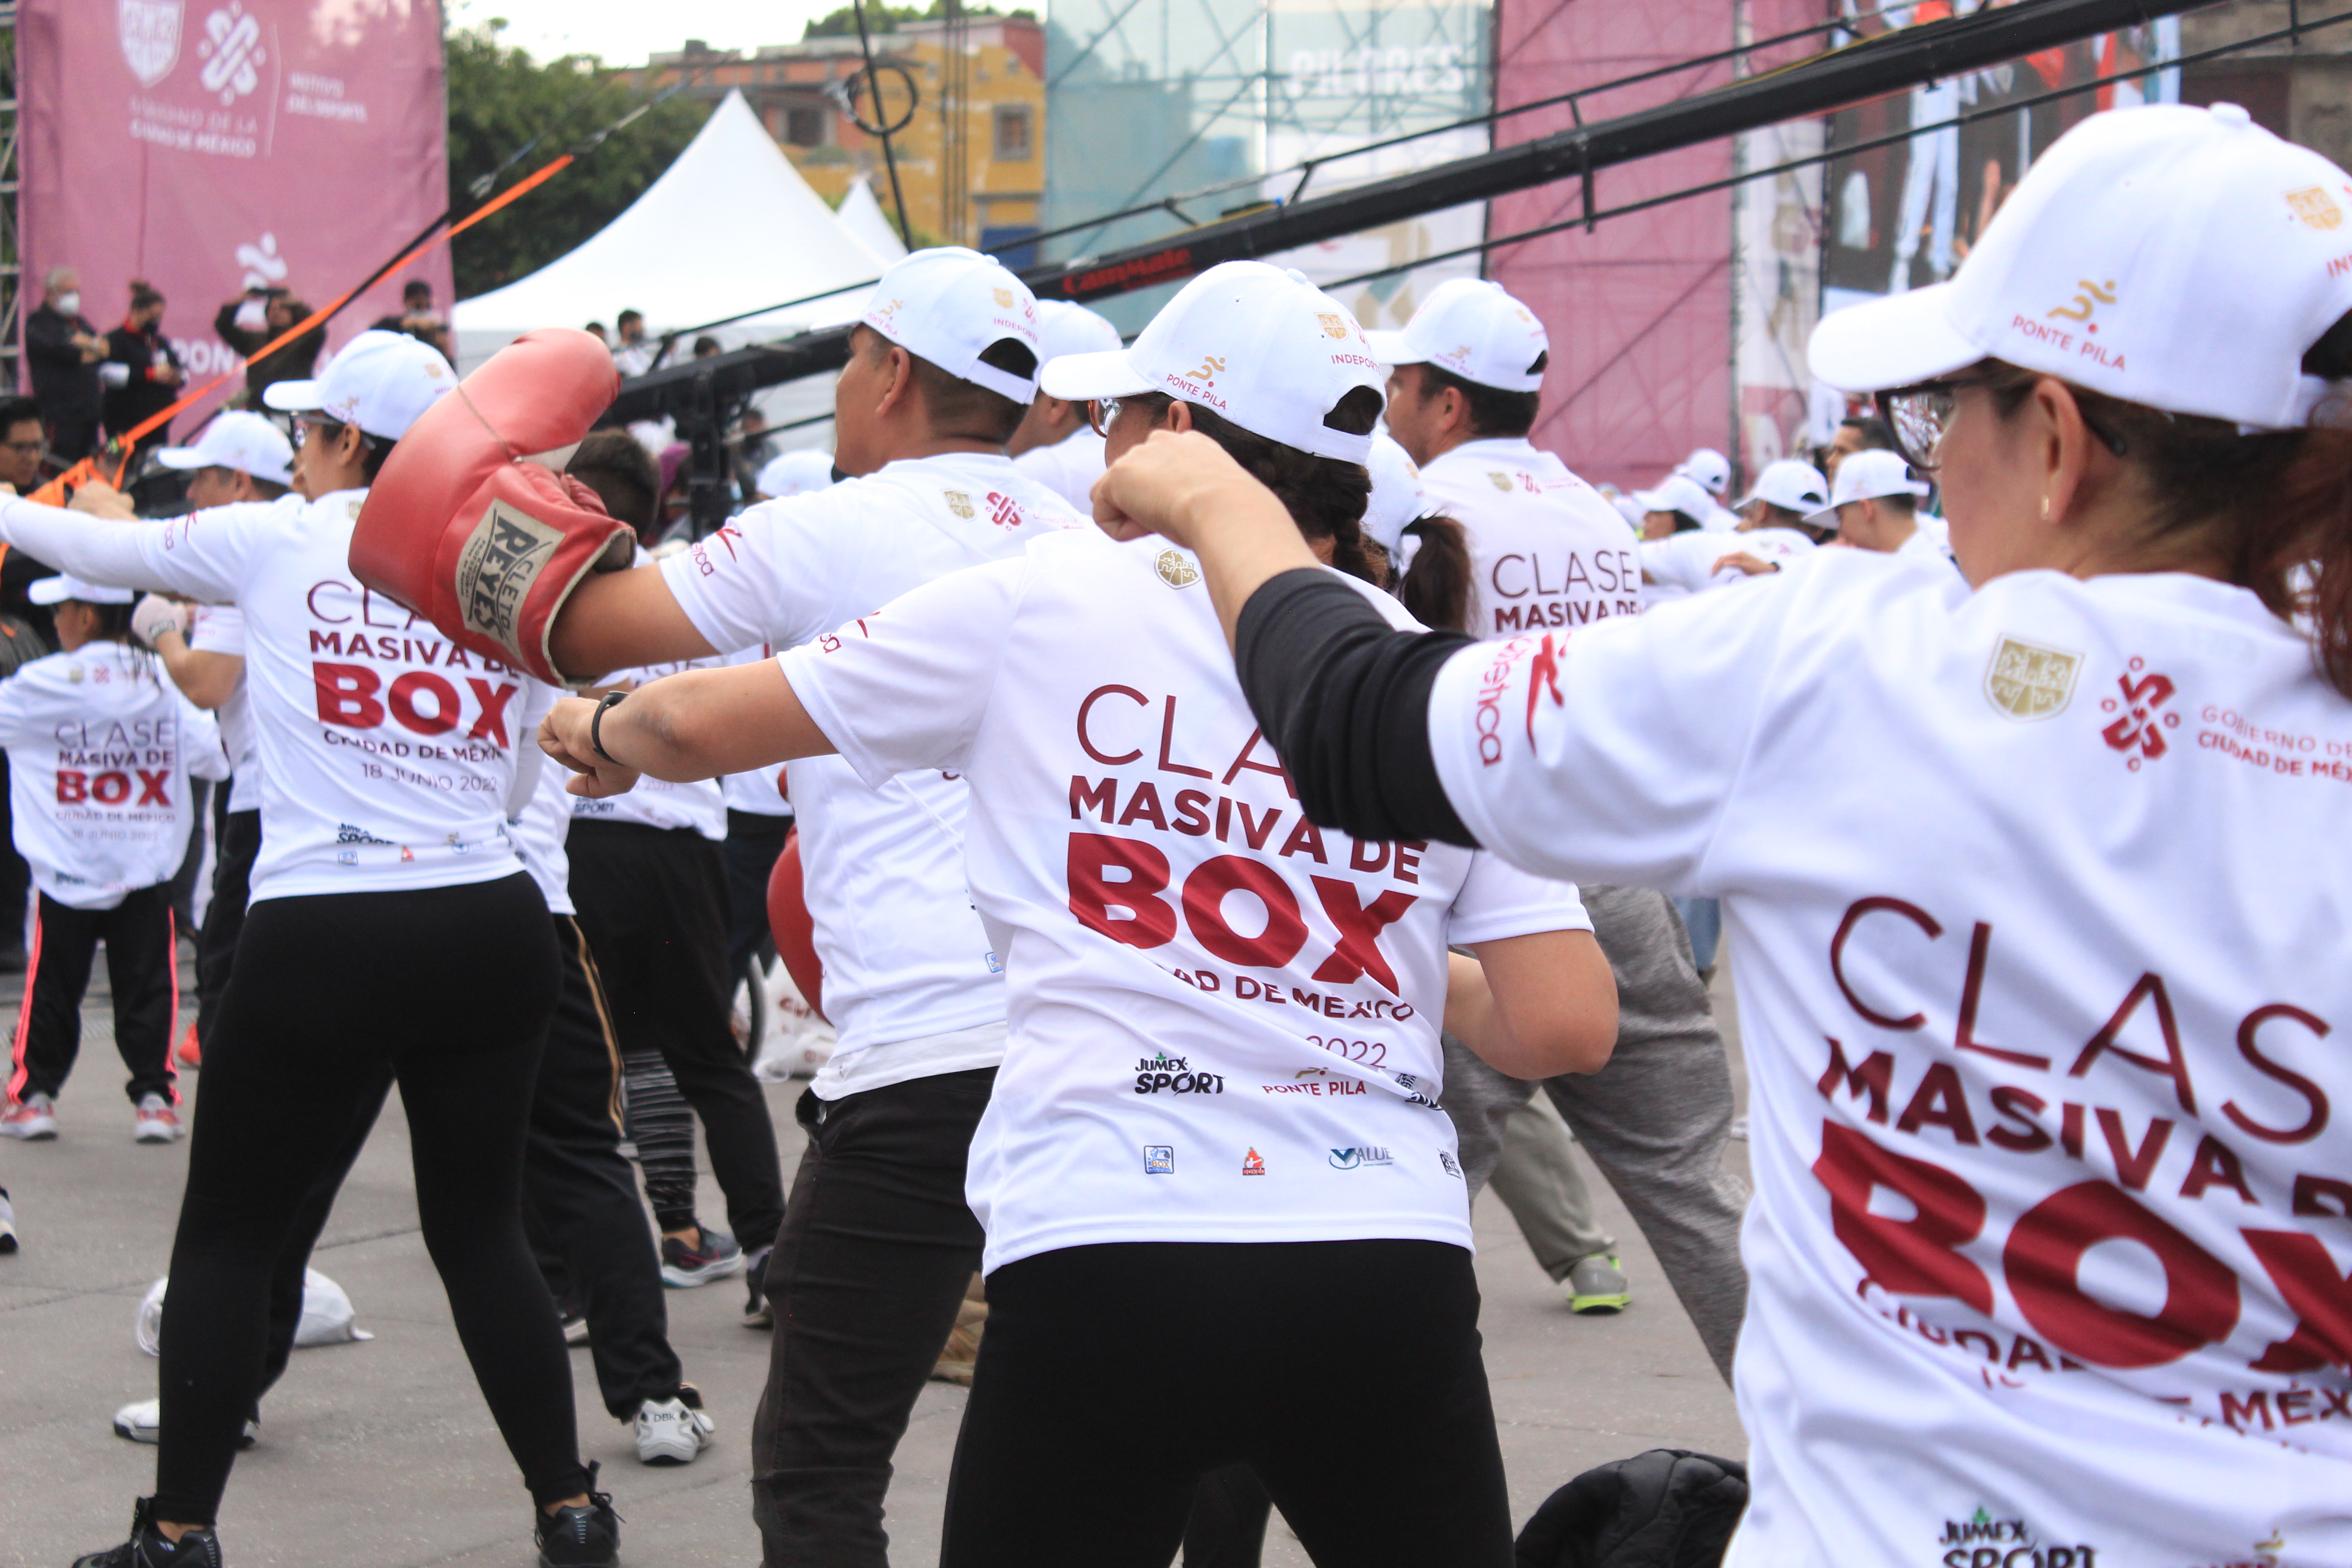 La clase masiva de box y los conciertos en el Zócalo han generado críticas ante el aumento de casos de COVID-19 (Foto: Luz Anahí Coello/ Infobae México)